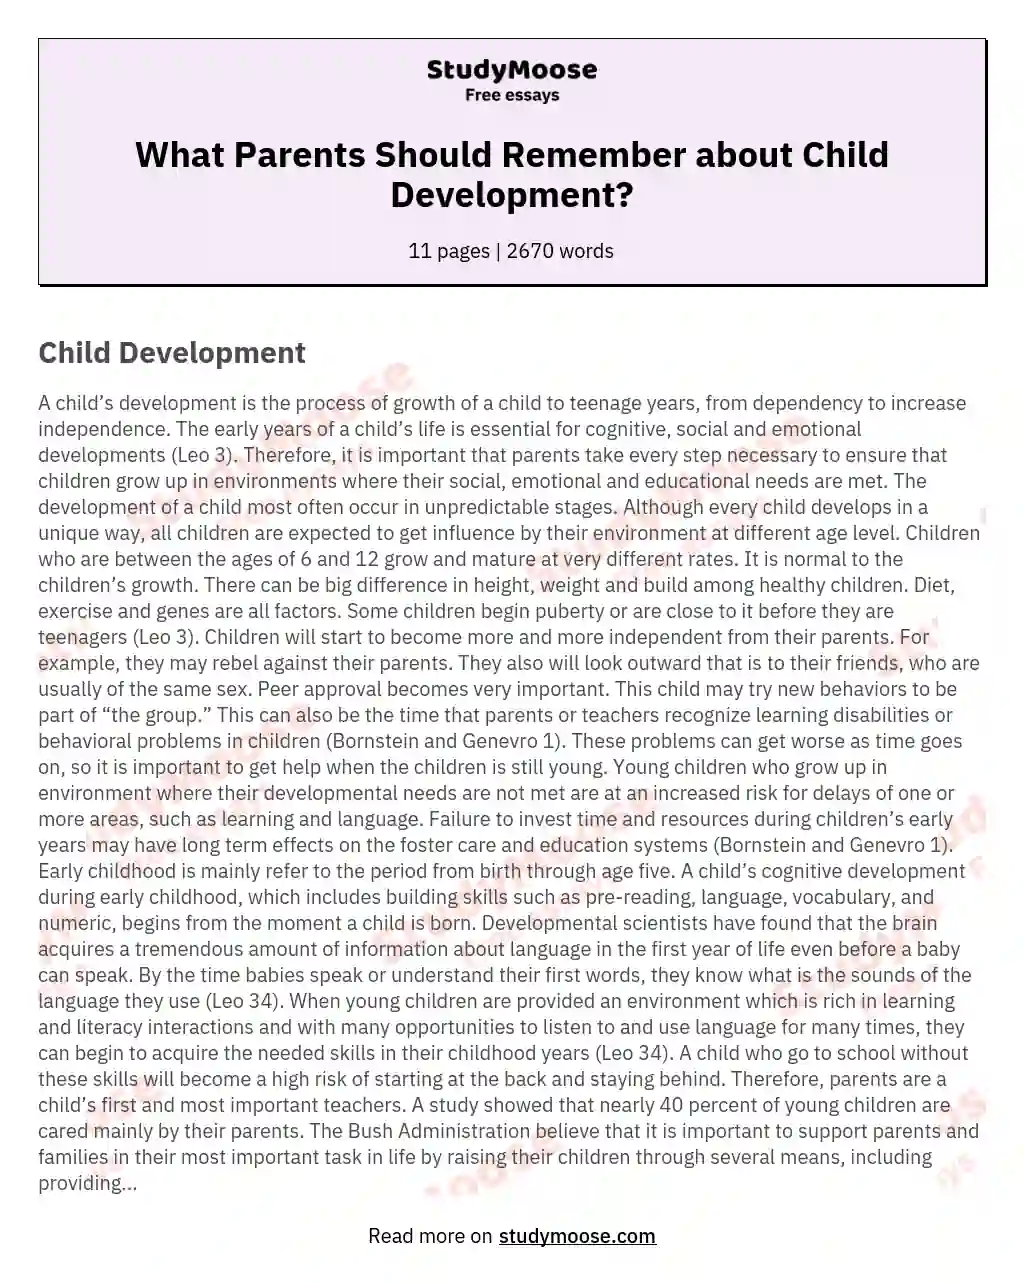 What Parents Should Remember about Child Development? essay